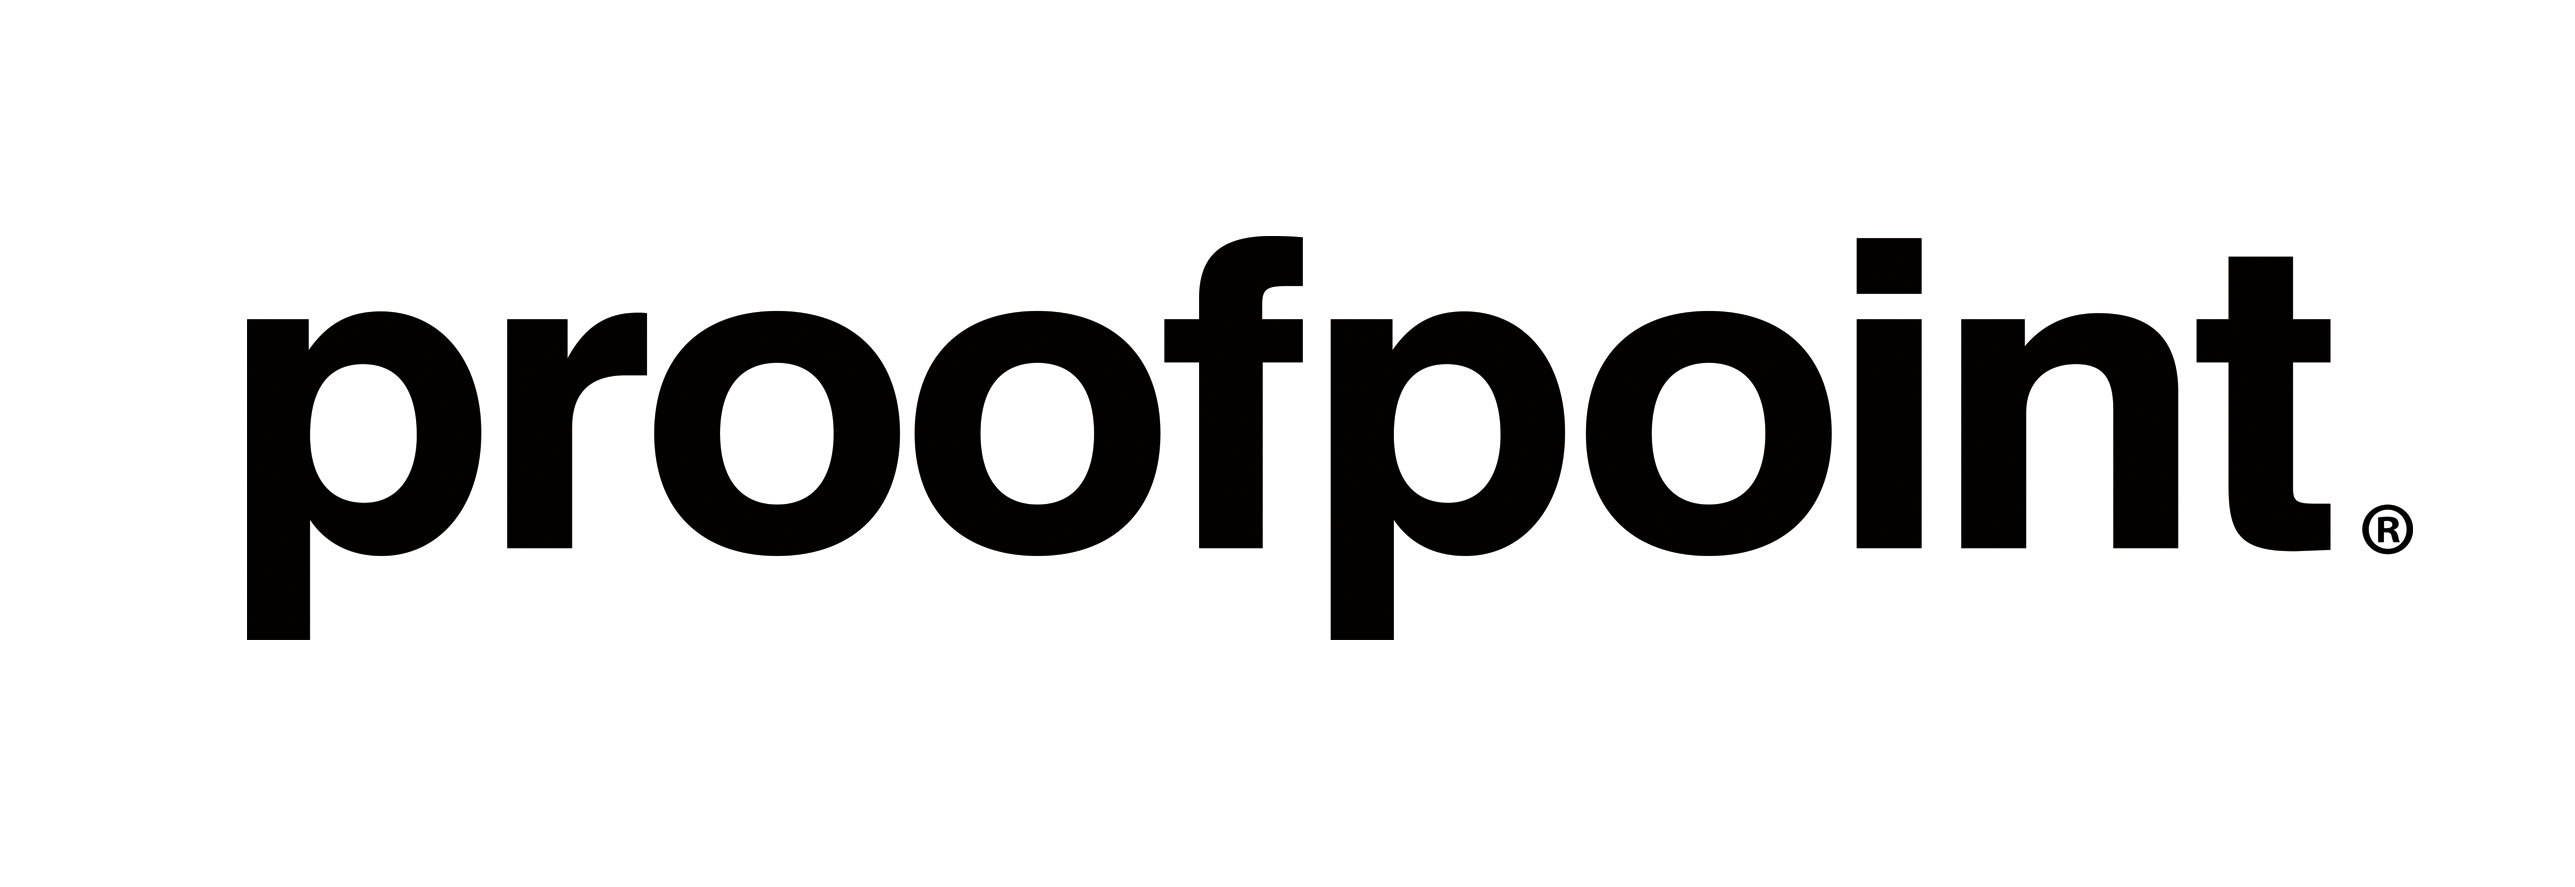 Wombat_logo